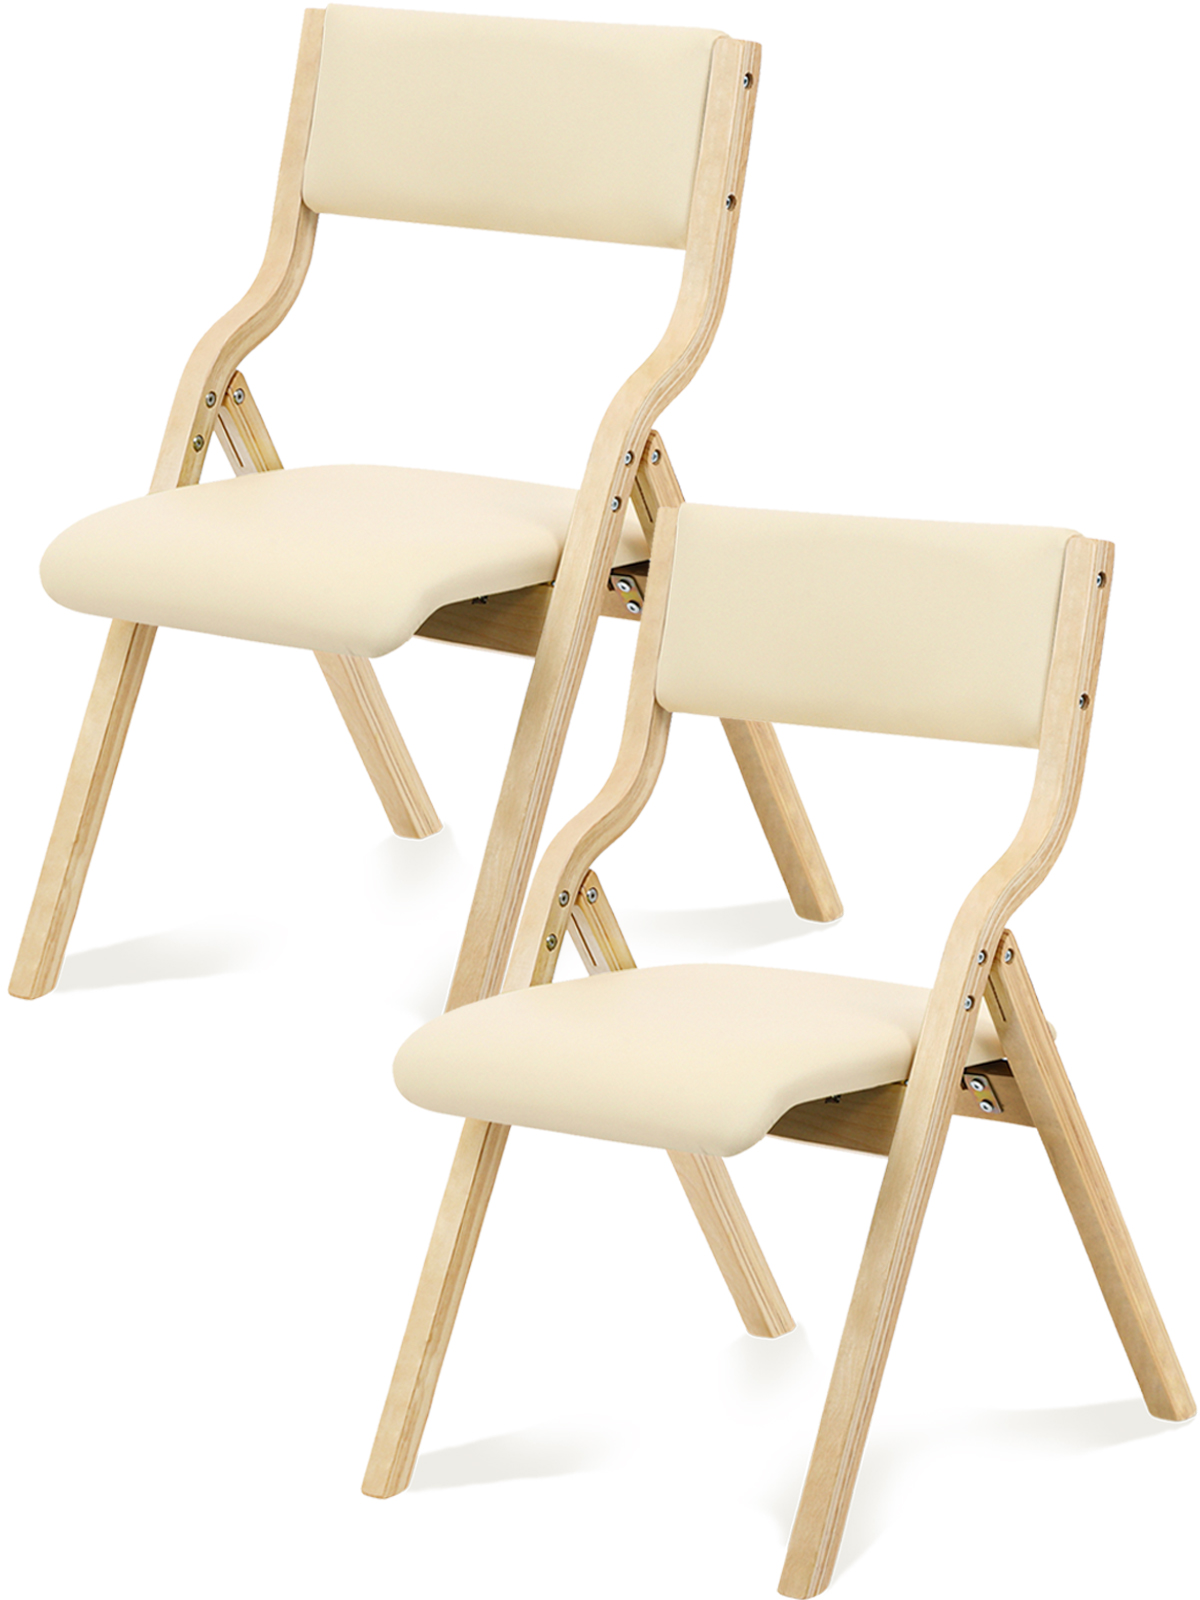 1年保証 ダイニングチェア 折りたたみ椅子 2脚セット 完成品 リビングチェア PU 木製 天然木 おしゃれ 省スペース 収納便利 玄関 脱衣所 介護  スツール